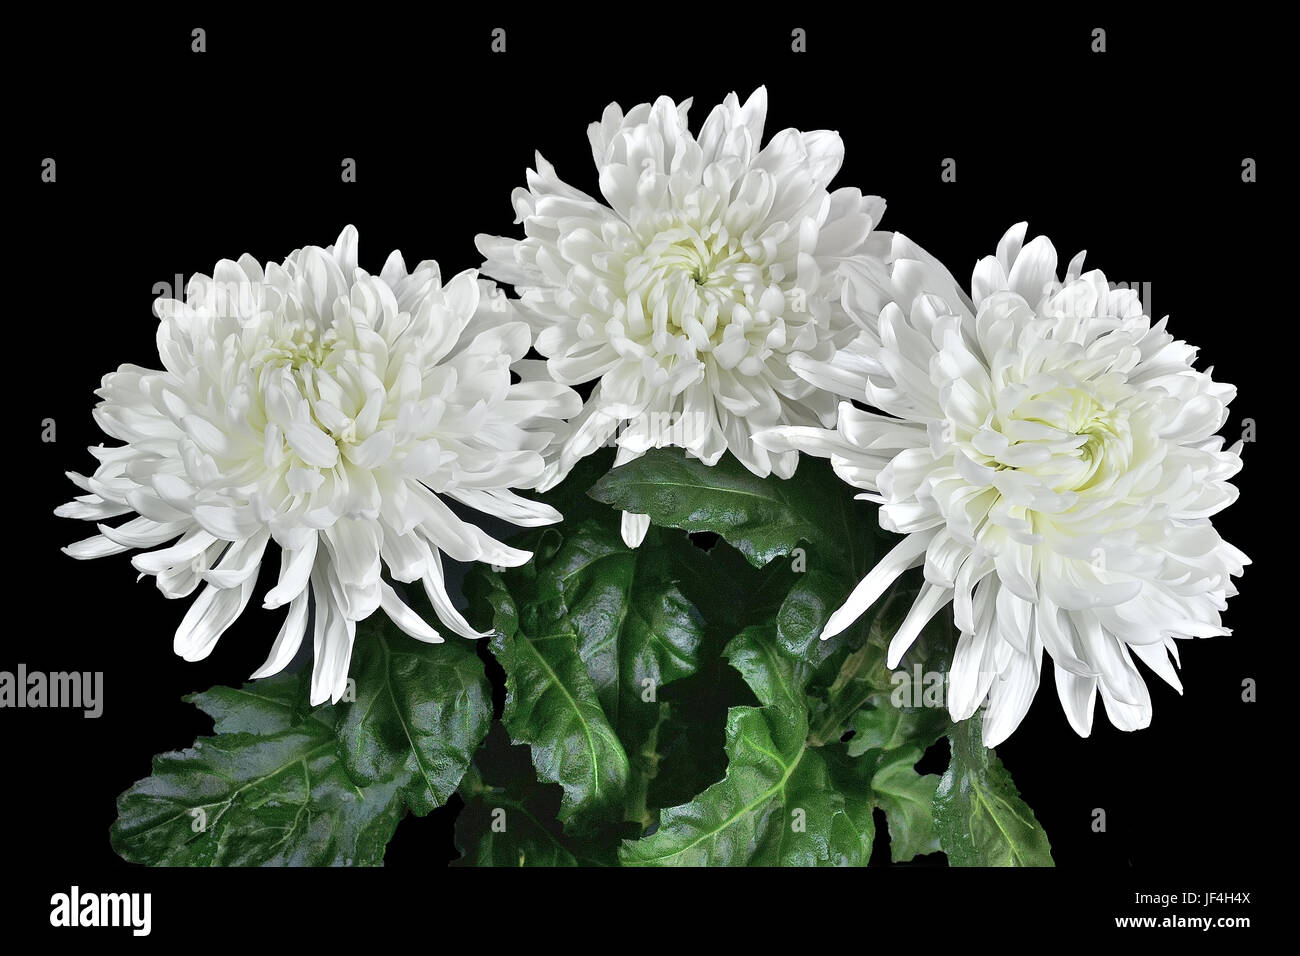 Three beautiful white chrysanthemum flowers Stock Photo